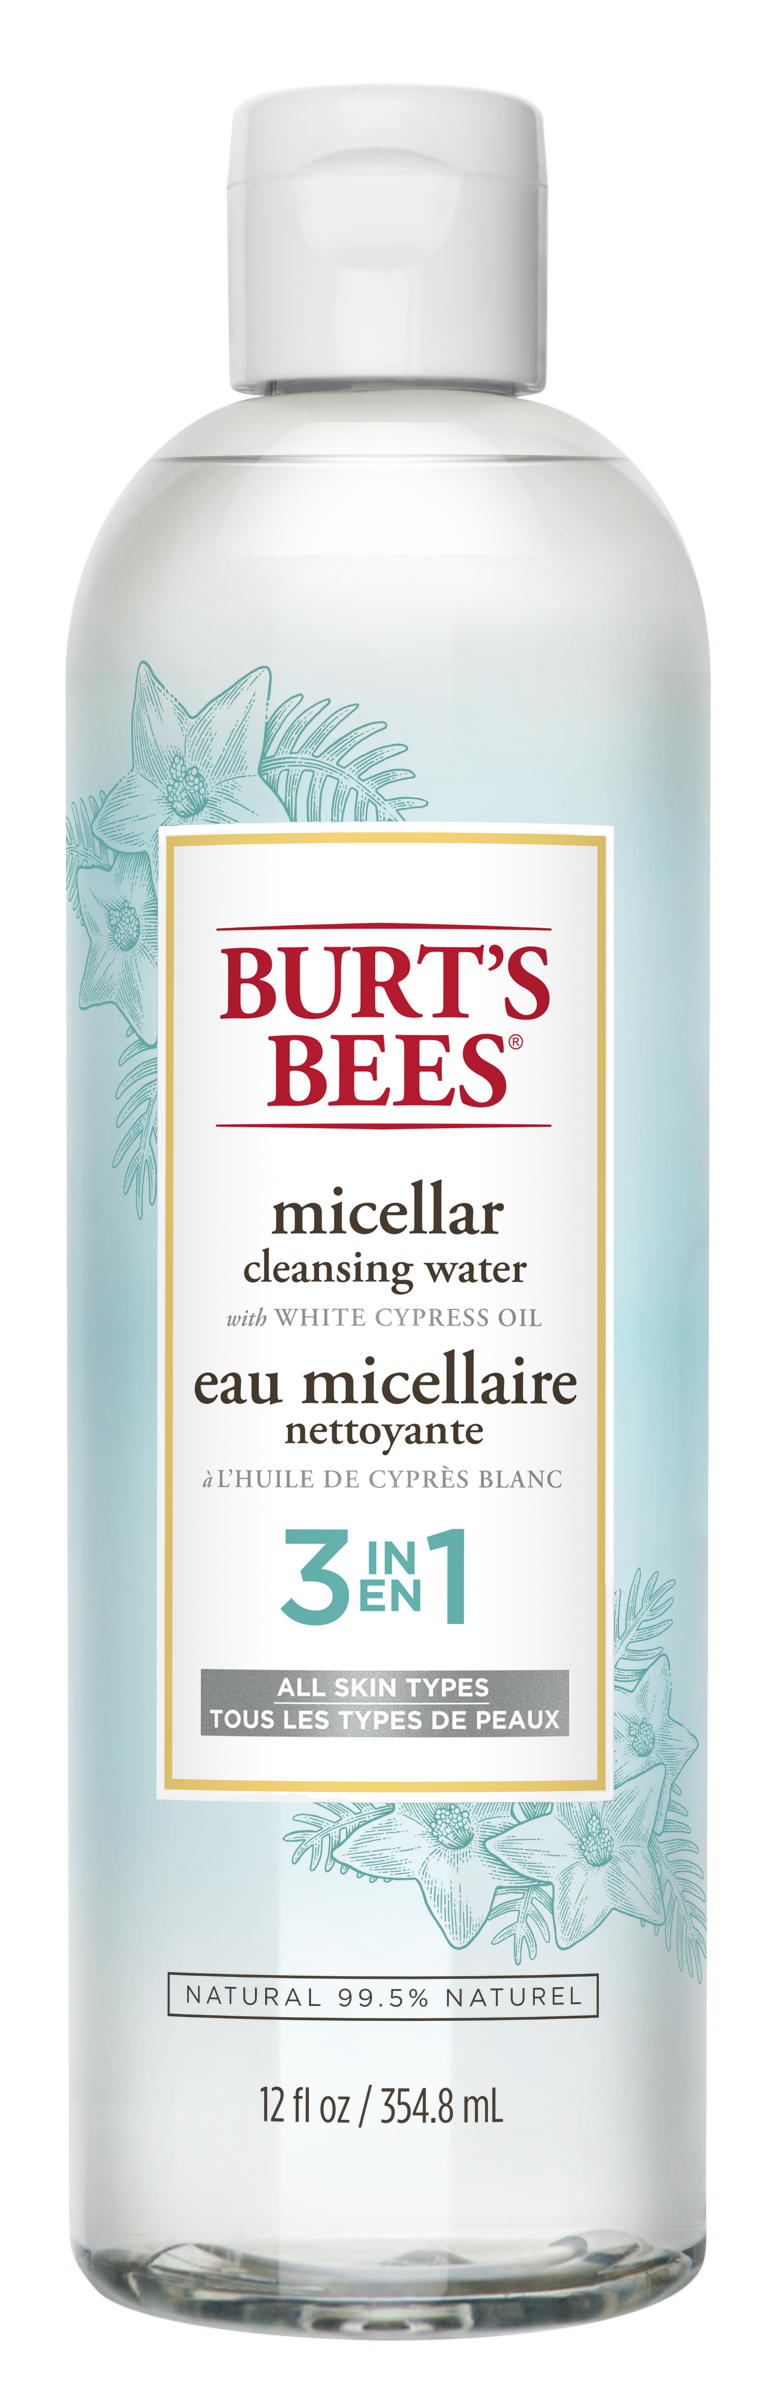 Burt's Bees Micellar Cleansing Water, 354 ml